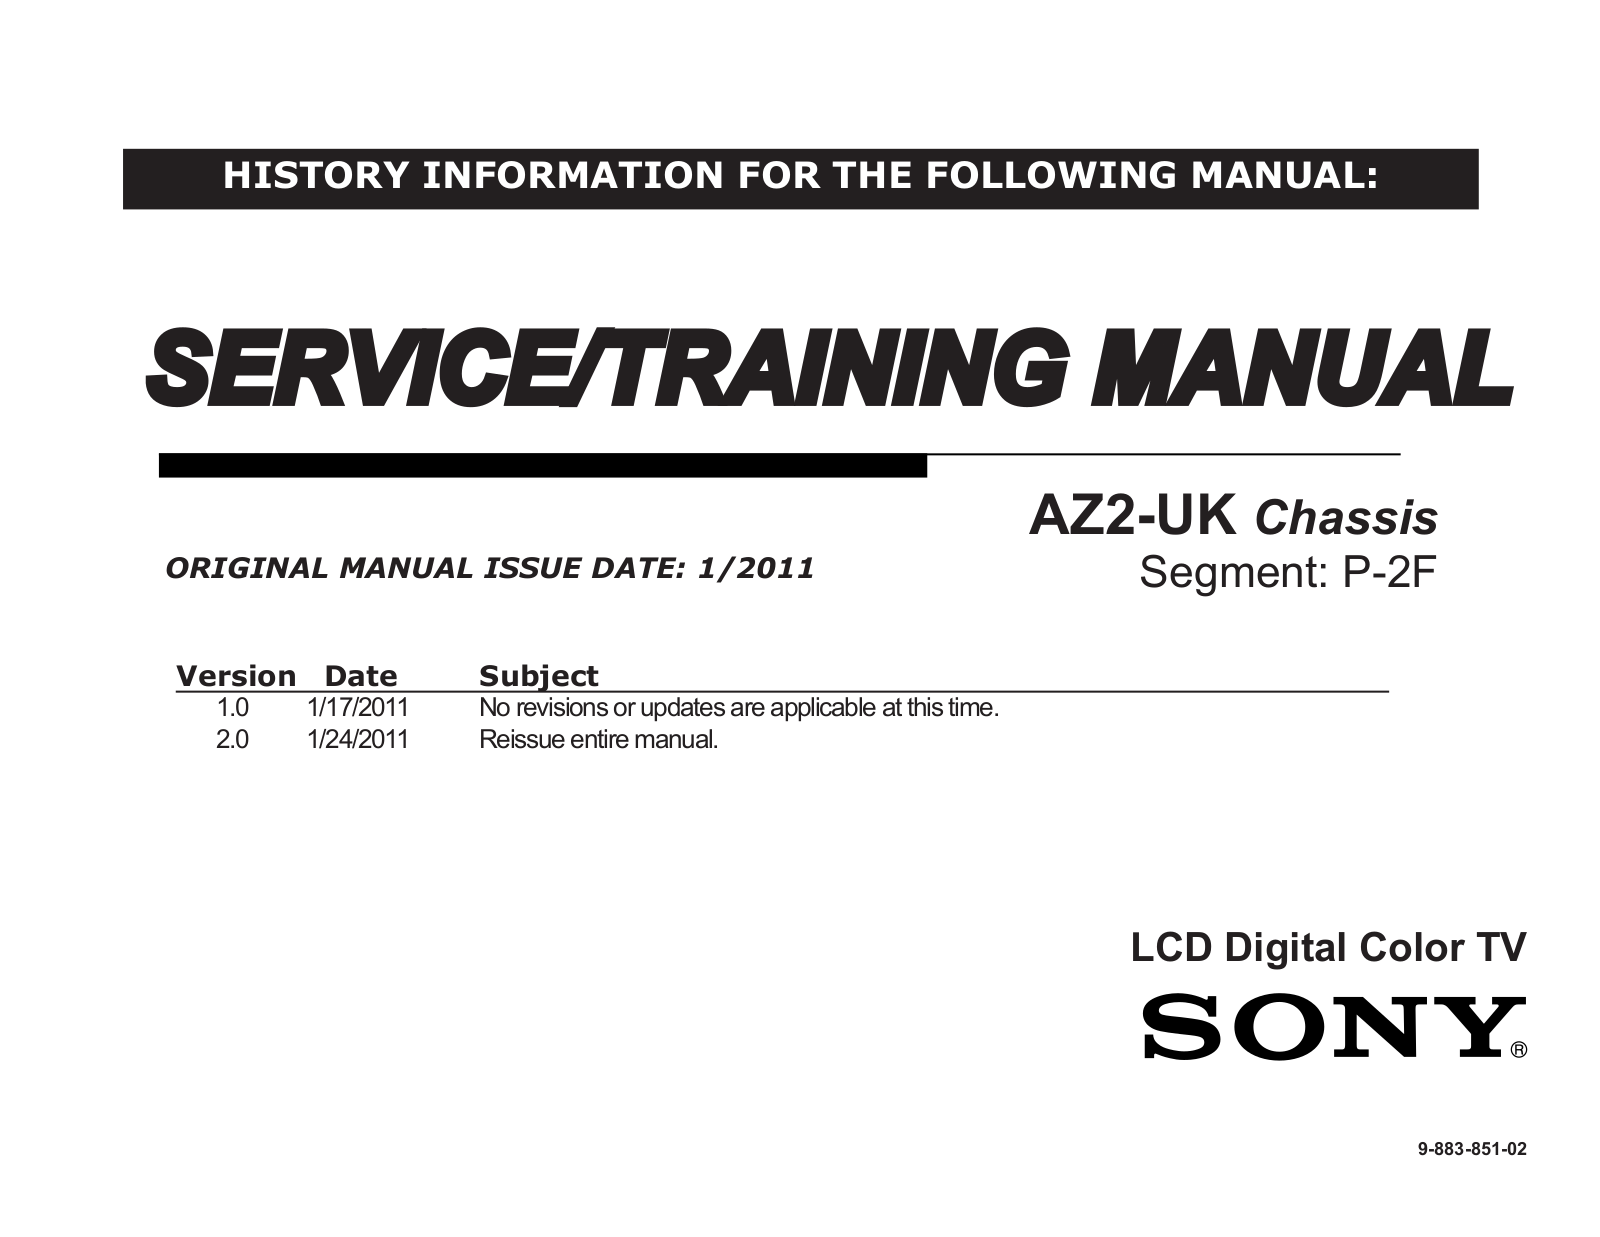 Sony KDL-40BX421, KDL-40BX420, KDL-32BX420, KDL-32BX320, KDL-32BX321 User Manual